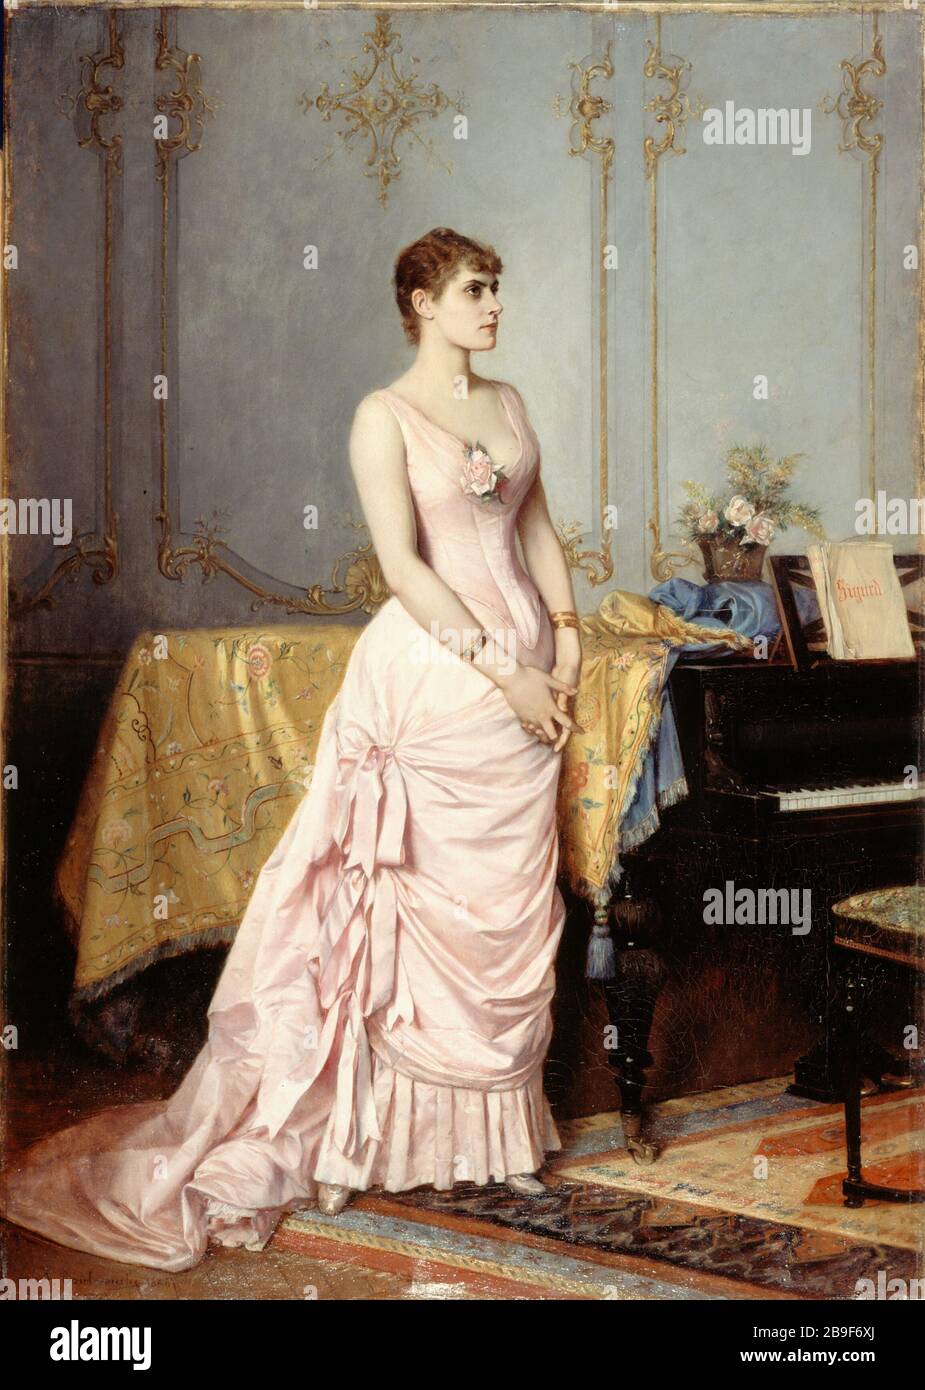 ROSE CARON Auguste Toulmouche (1829-1890), 'Rose Caron (1857-1930), cantatrice française', huile sur toile. Paris, Musée Carnavalet. Stock Photo